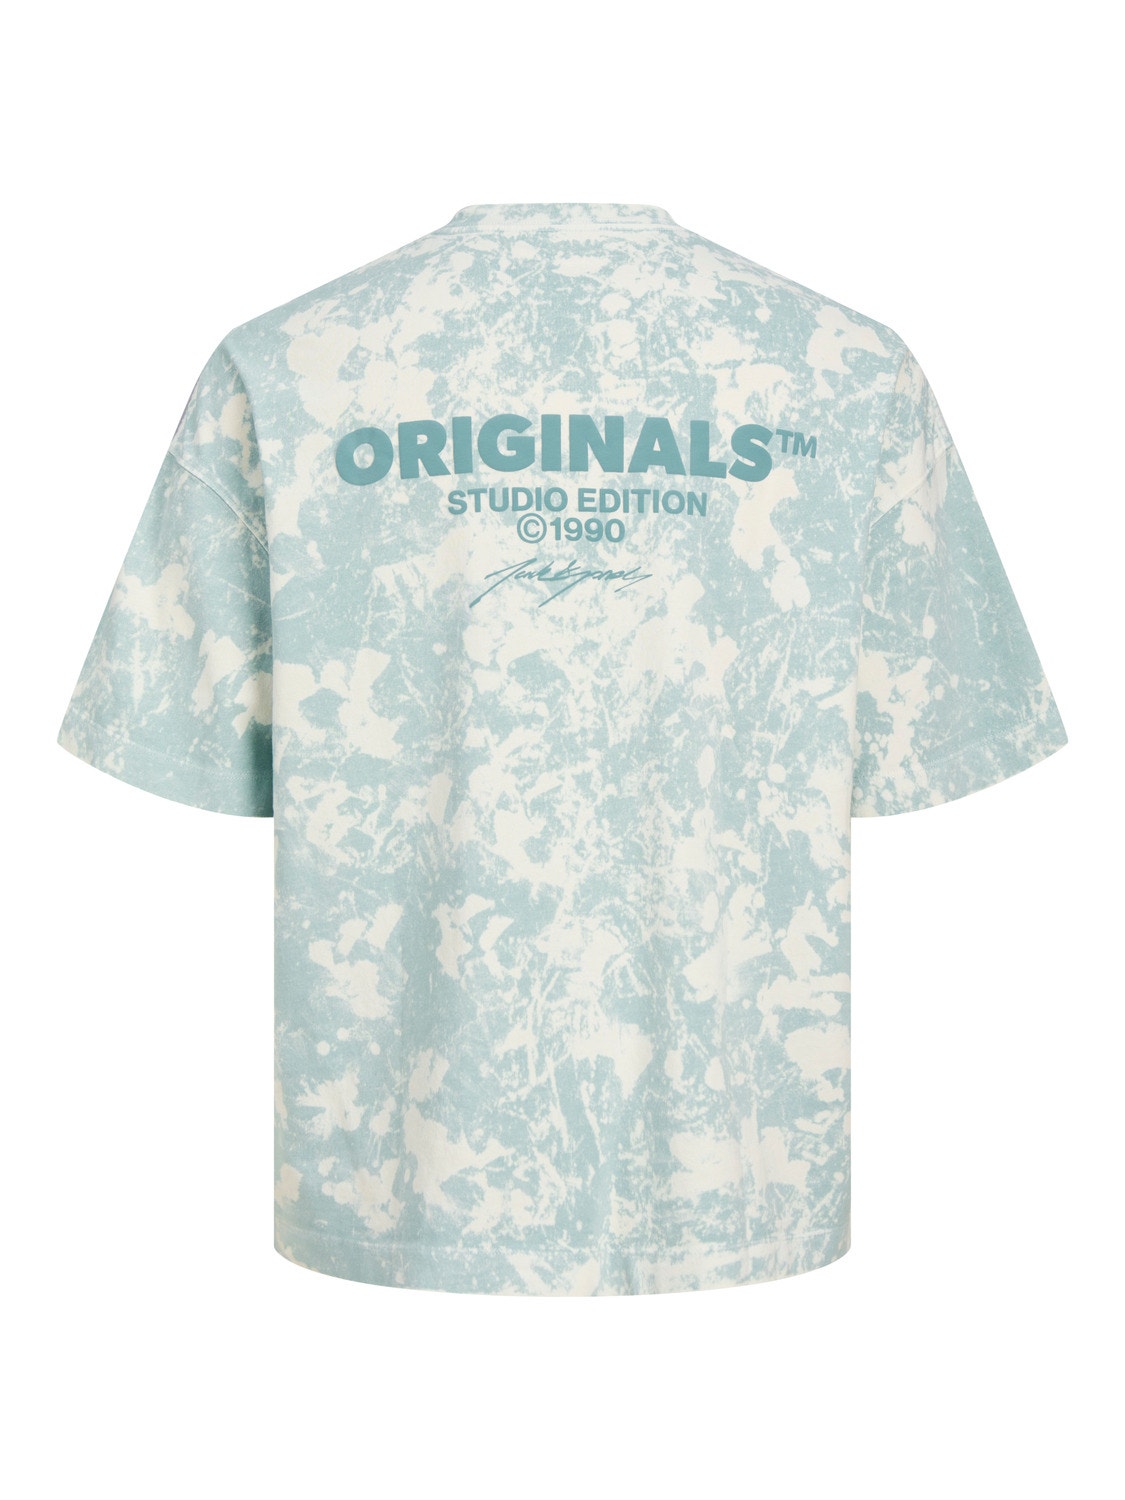 Jack & Jones Gedruckt Rundhals T-shirt -Gray Mist - 12256716